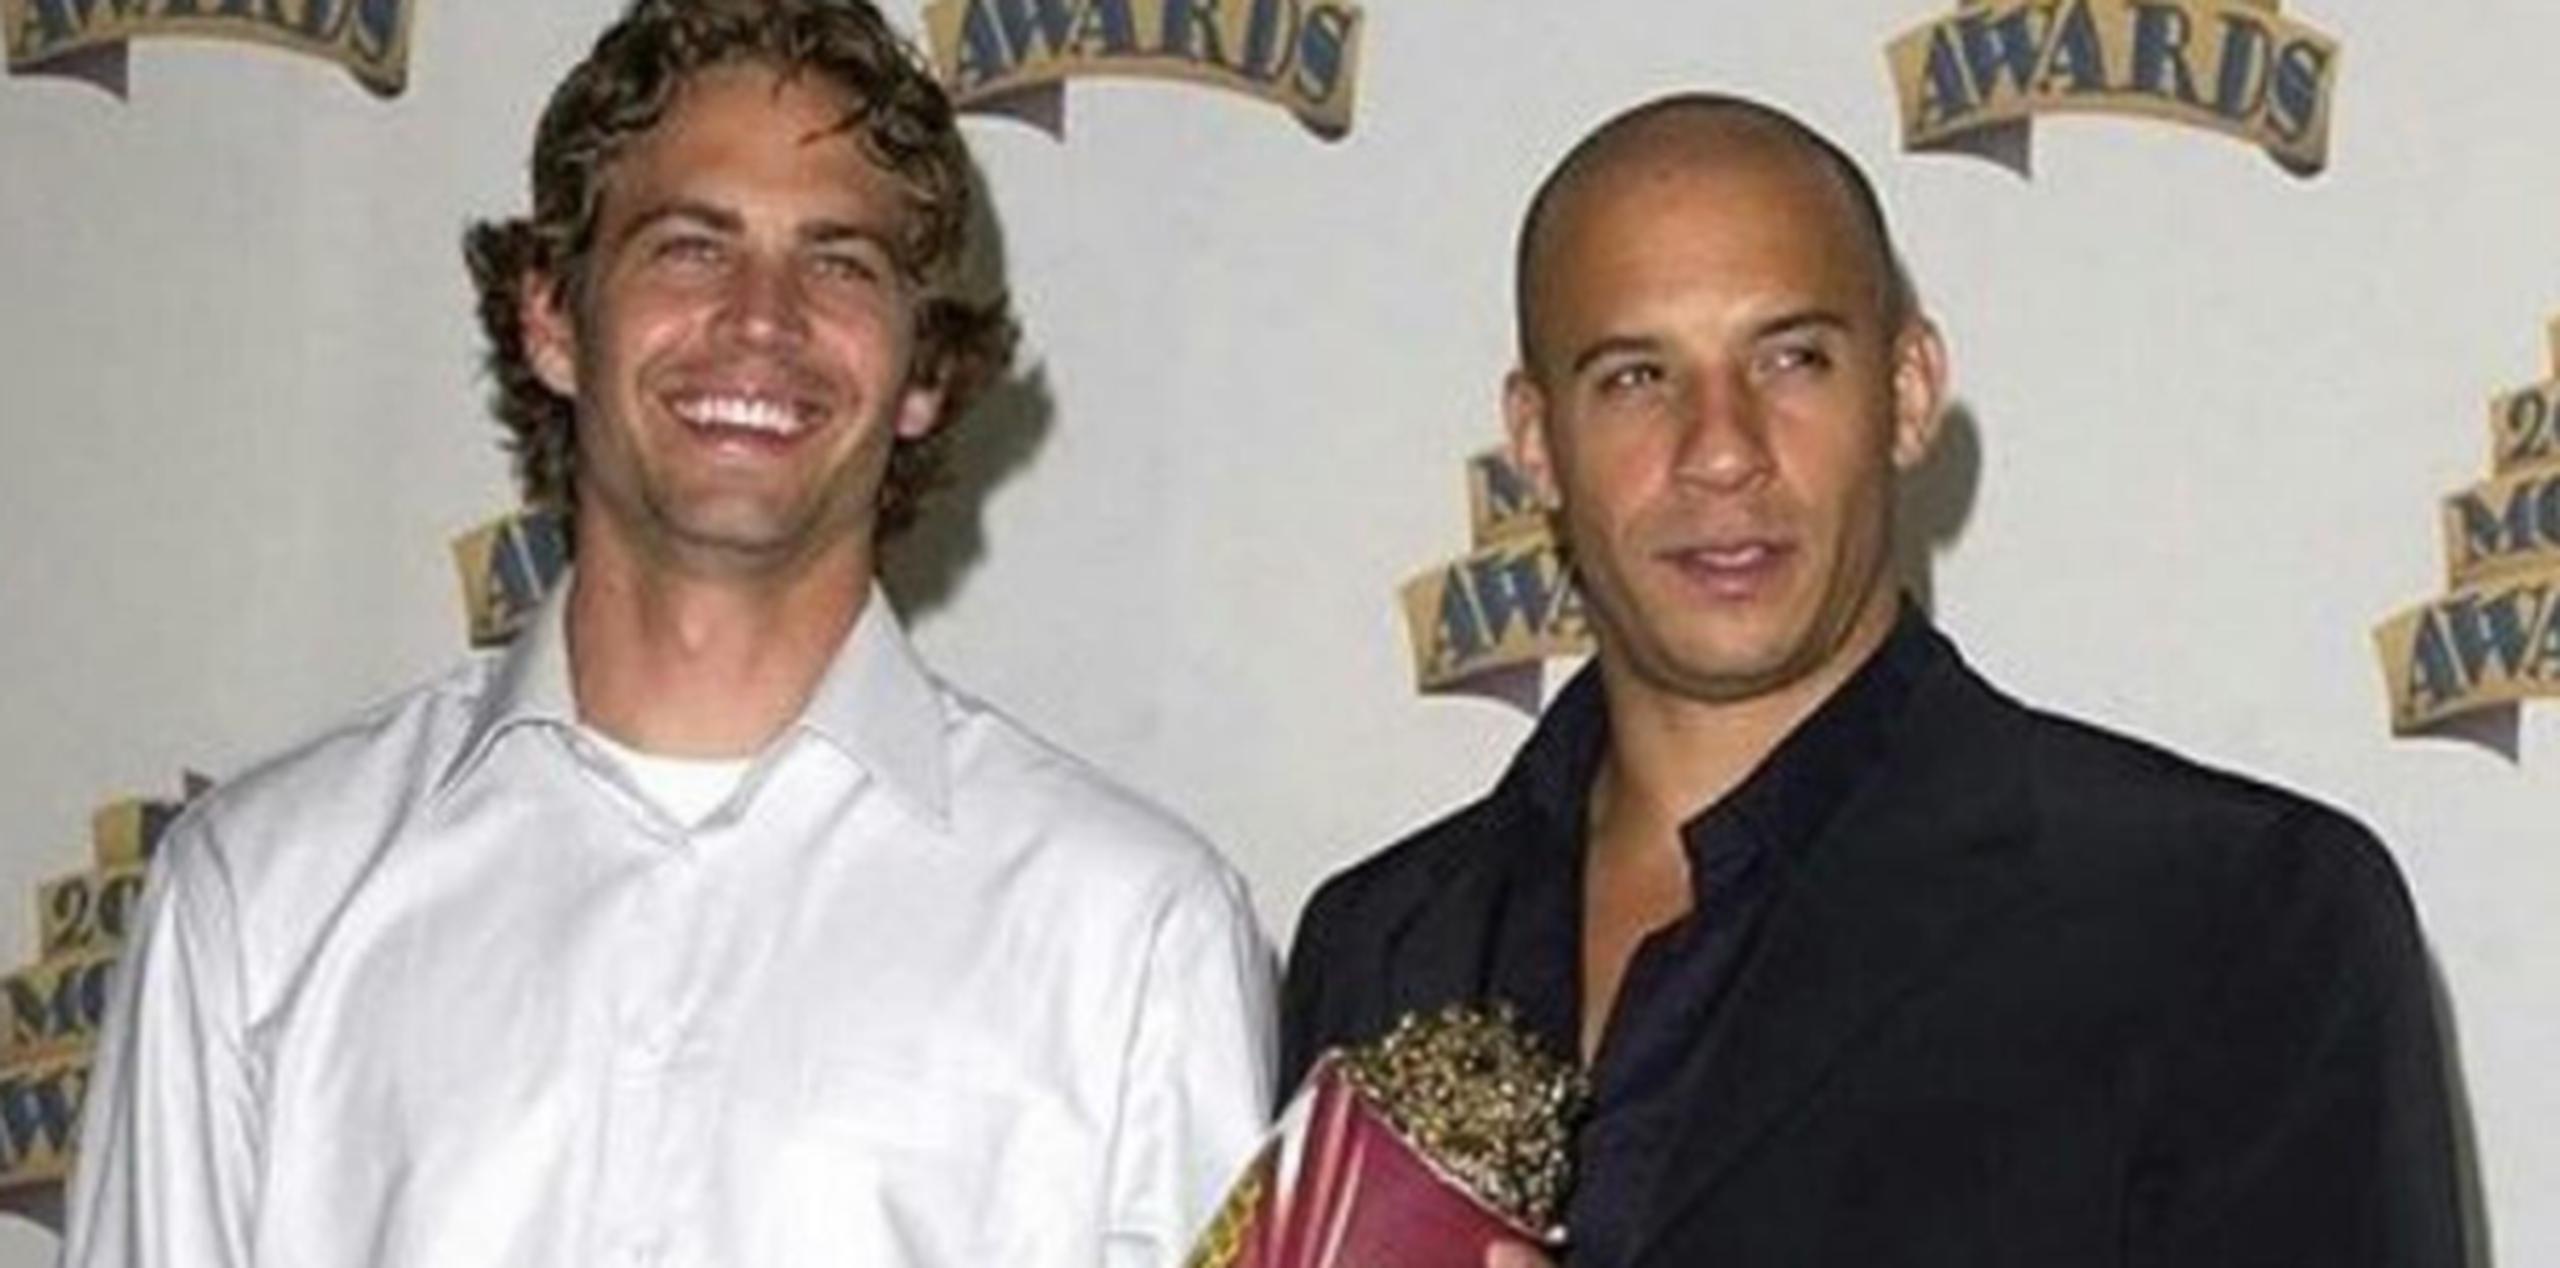 Paul y Vin en los MTV Movie Awards de 2002. (Instagram)